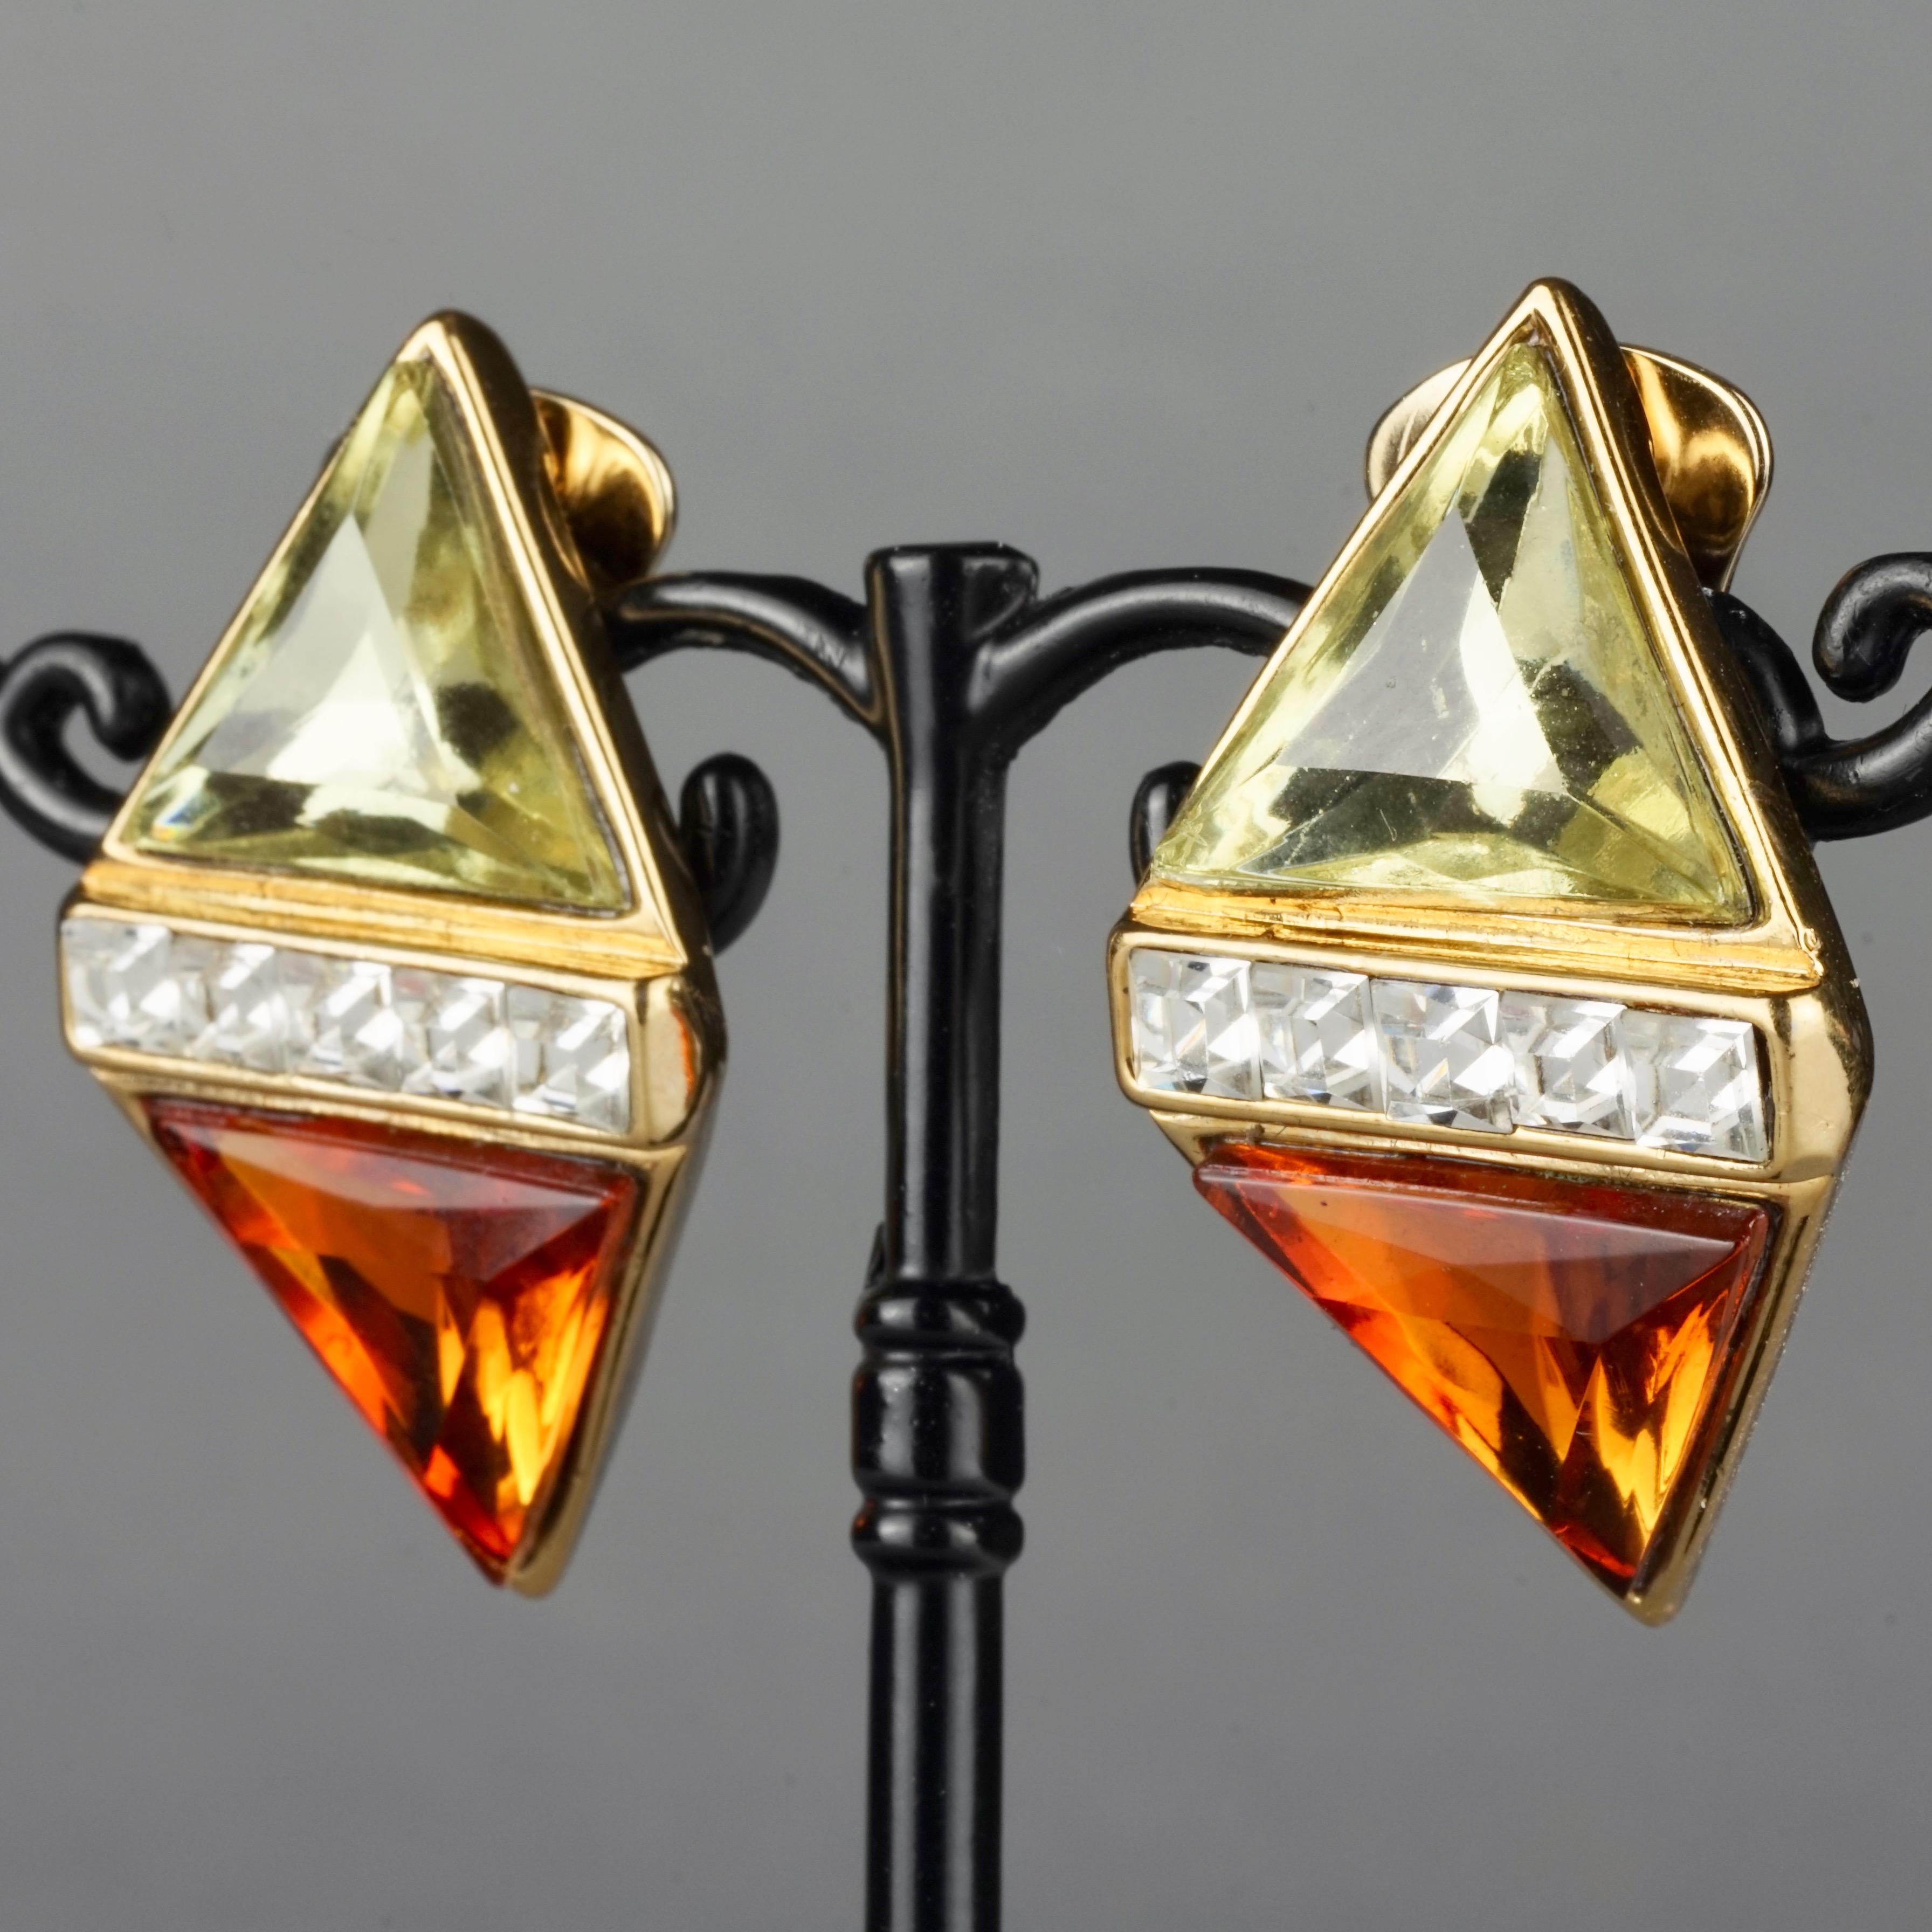 Vintage YVES SAINT LAURENT Ysl Jewelled Diamond Earrings 1